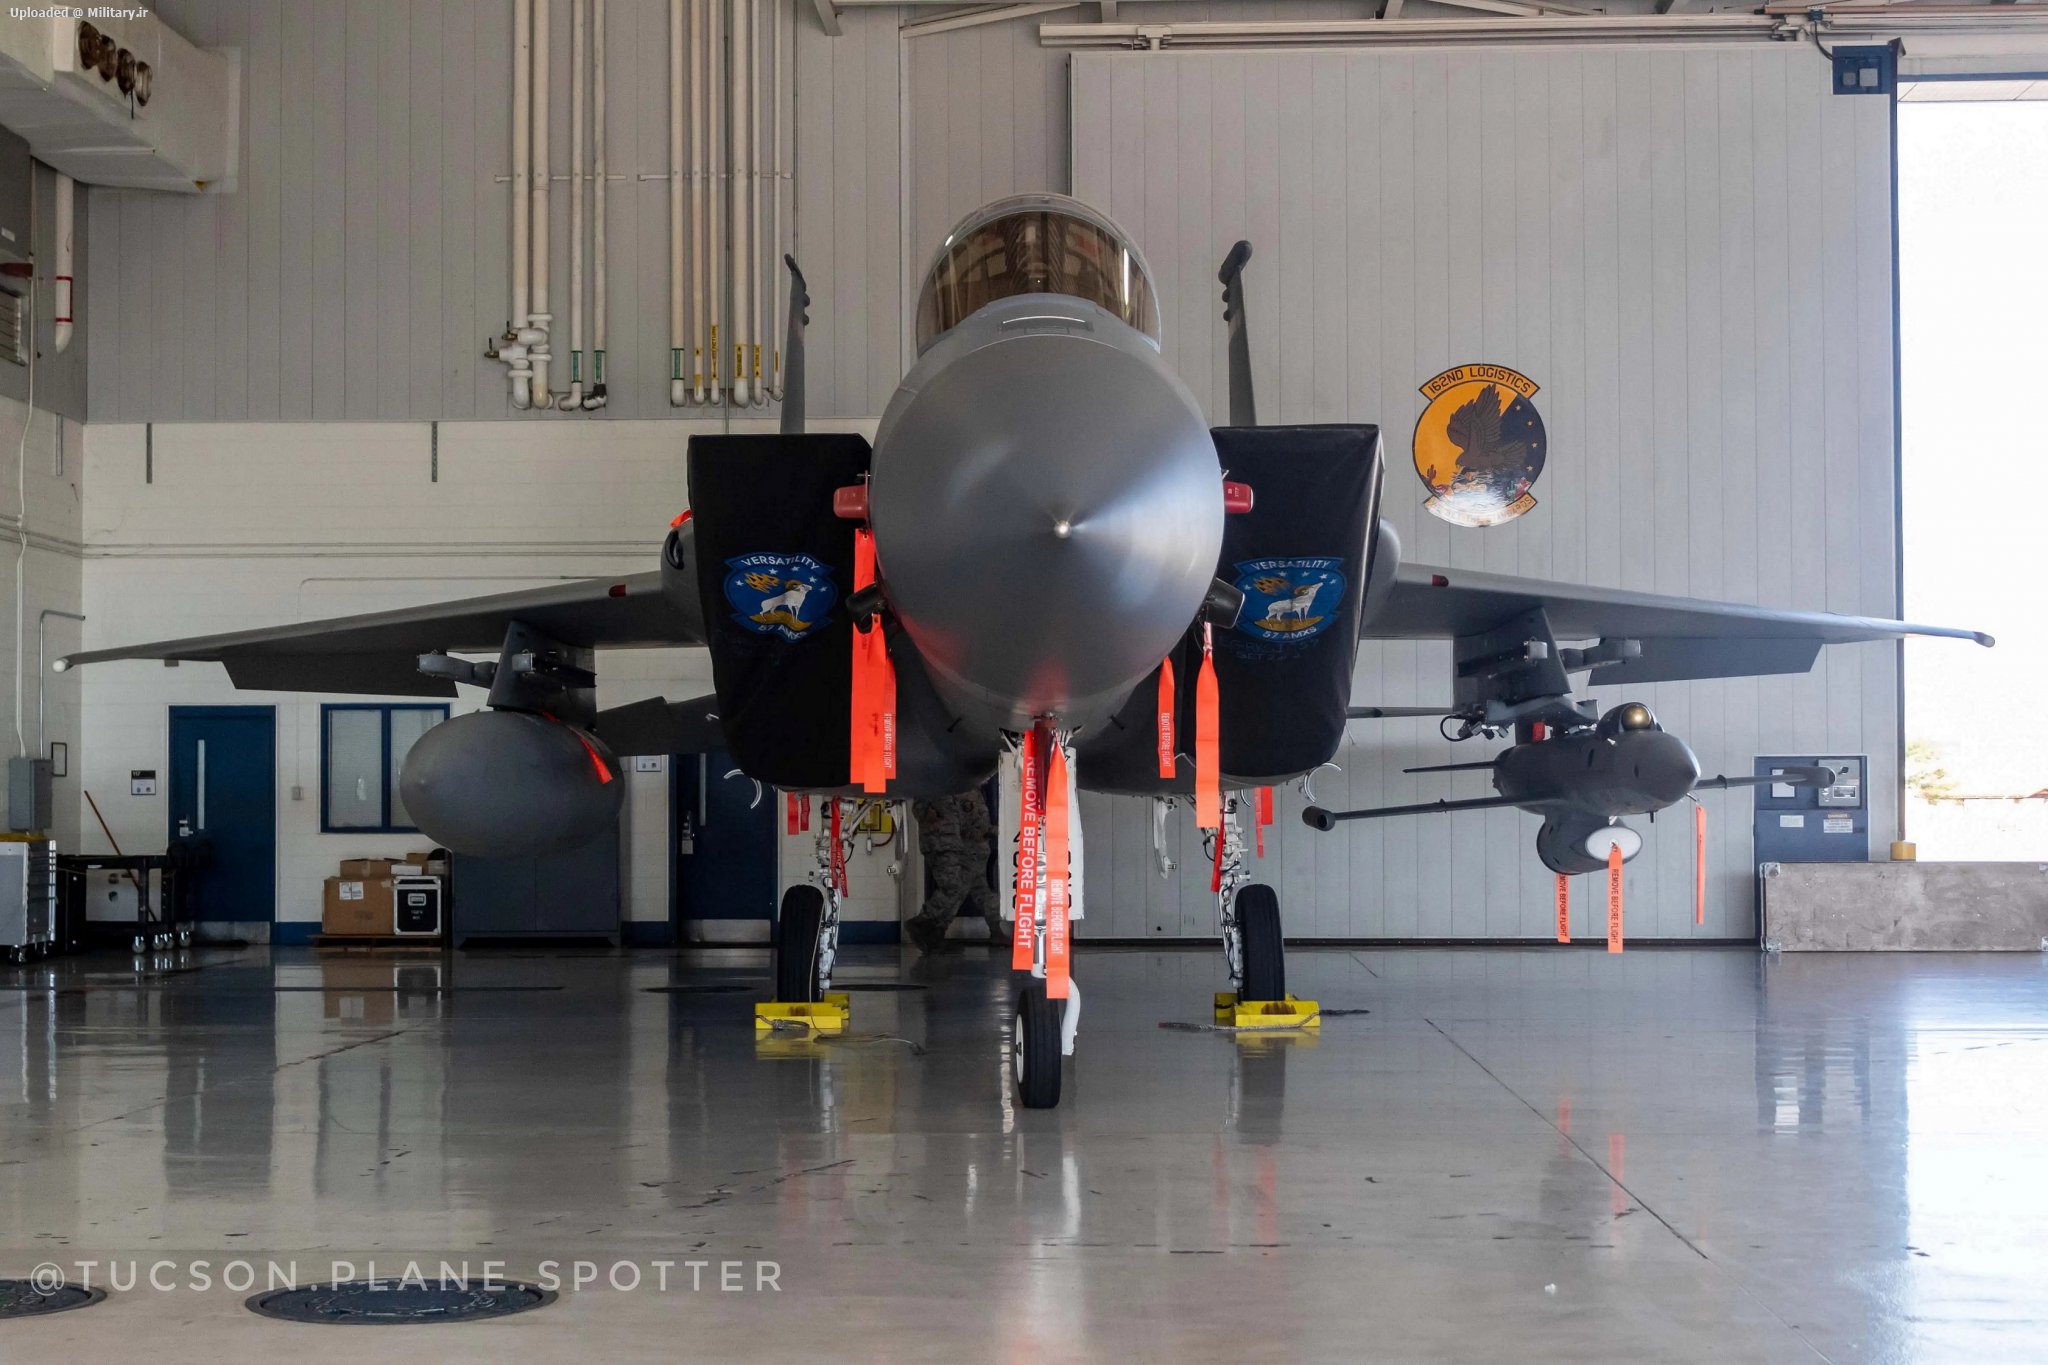 A_UTAP-22_seen_under_the_wing_of_an_F-15C_.jpg